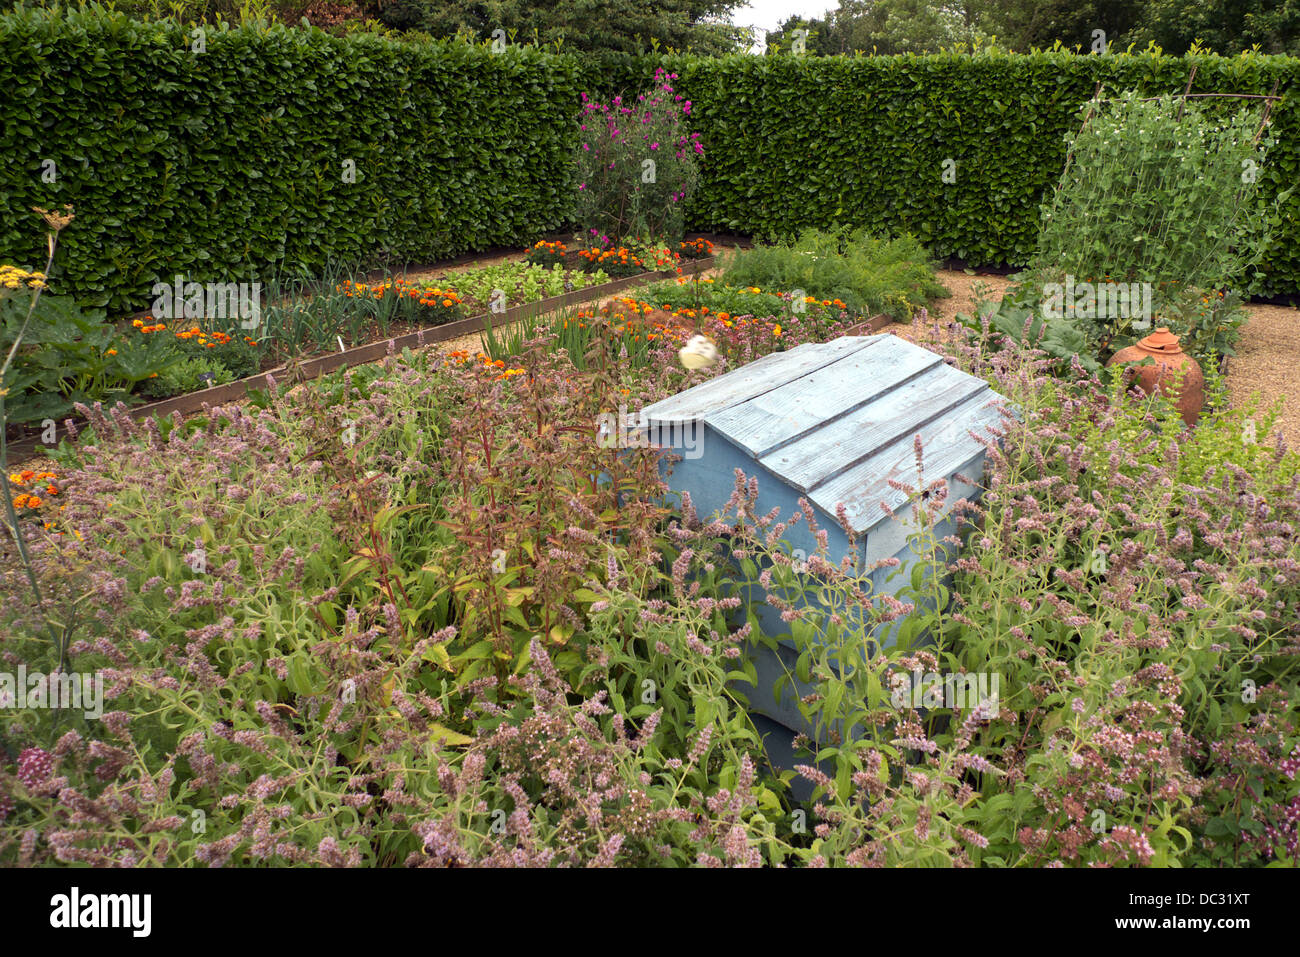 Herbs around beehive in kitchen garden, Geoff Hamilton's Barnsdale Gardens, Rutland, UK. Stock Photo